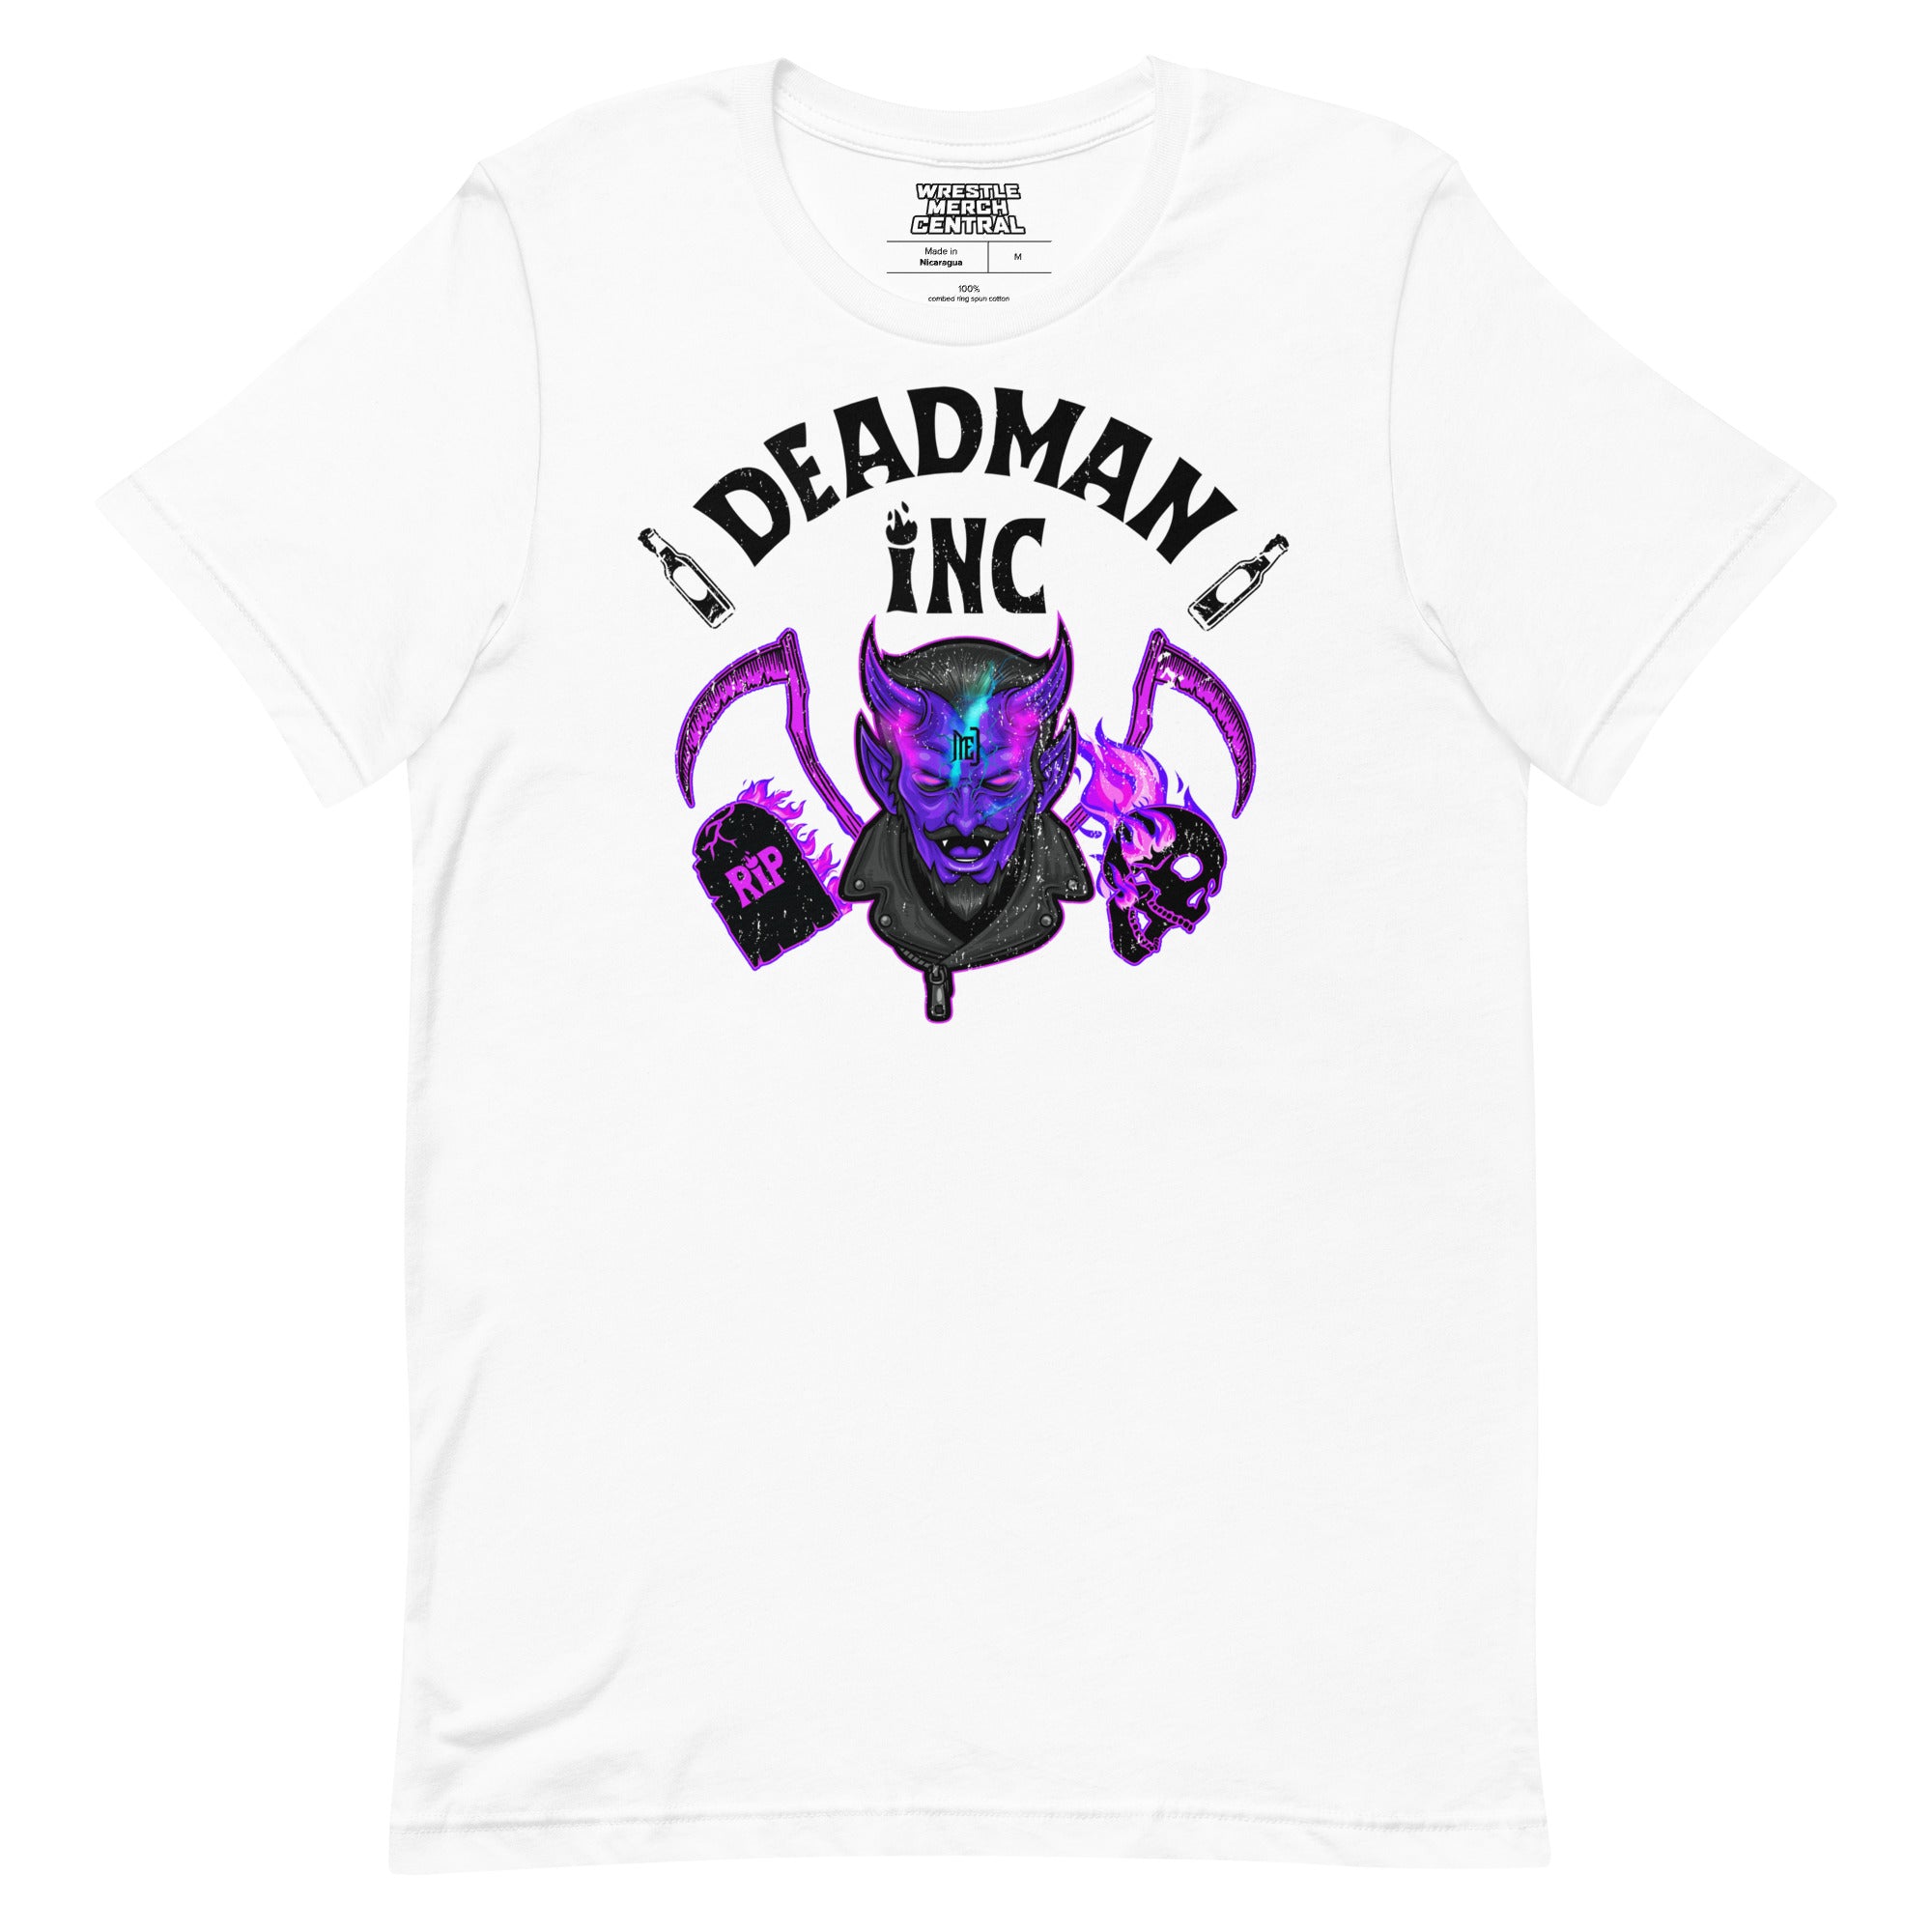 ME Deadman Inc Limited Edition Unisex T-Shirt